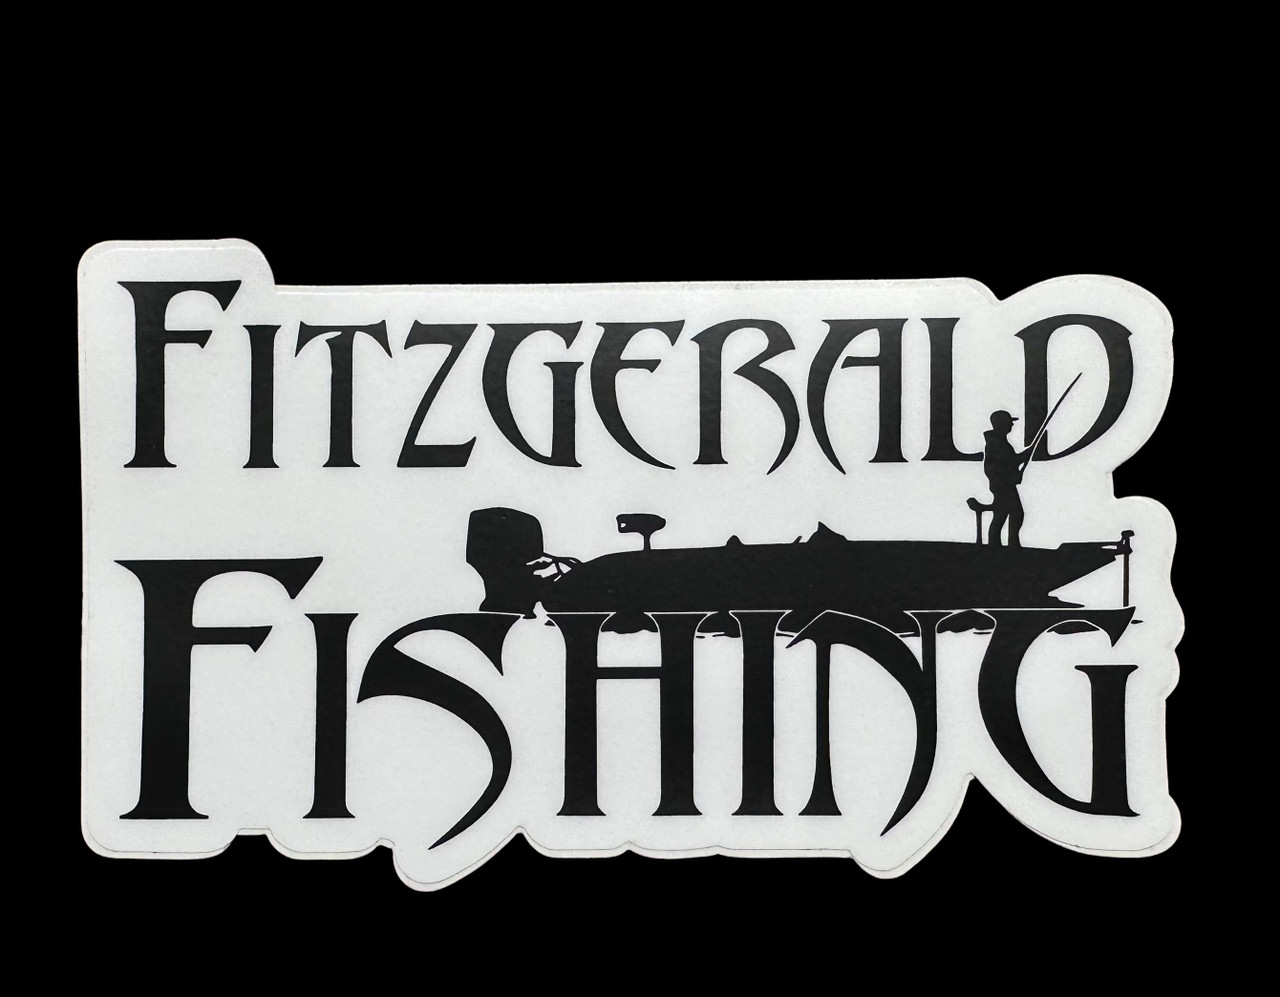 Fitzgerald Fishing Stickers 